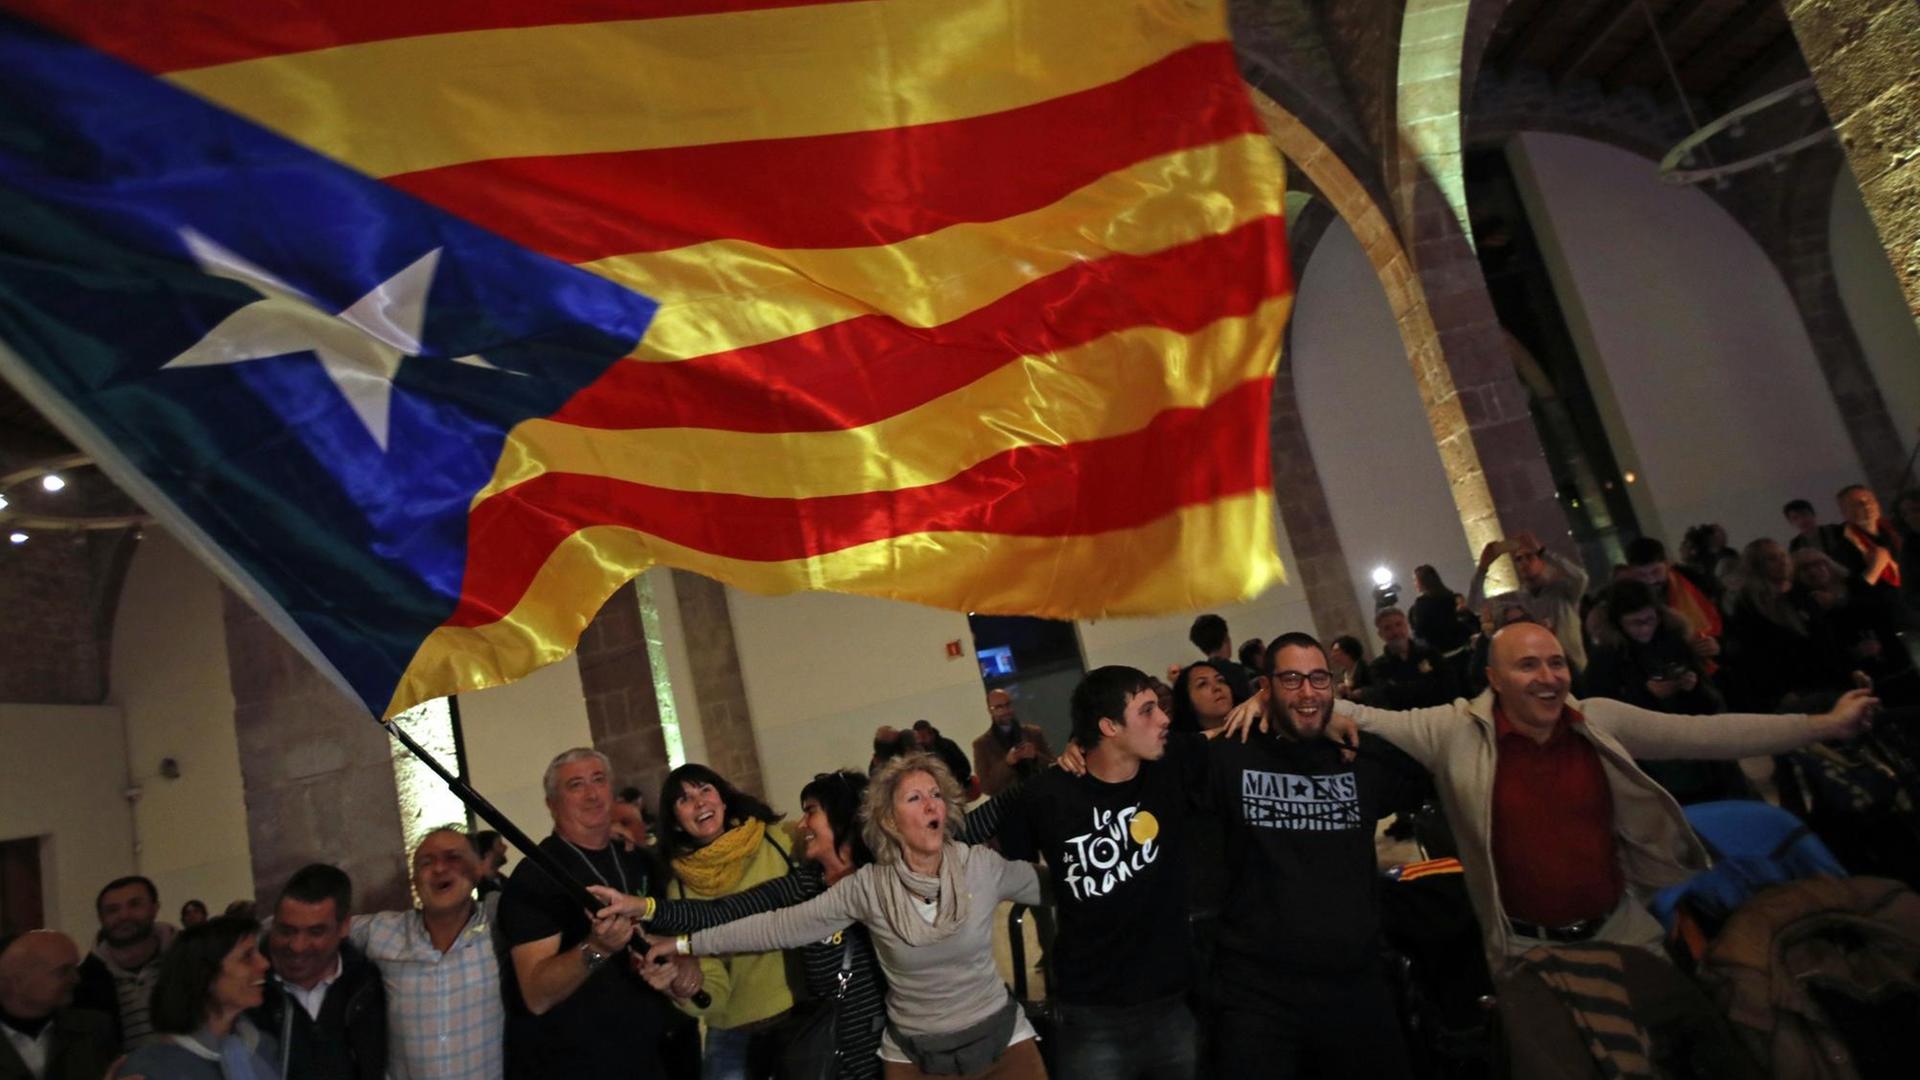 Anhänger der Unabhängigkeitsbewegung in Katalonien feiern in der katalanischen Nationalversammlung ihren Wahlerfolg.